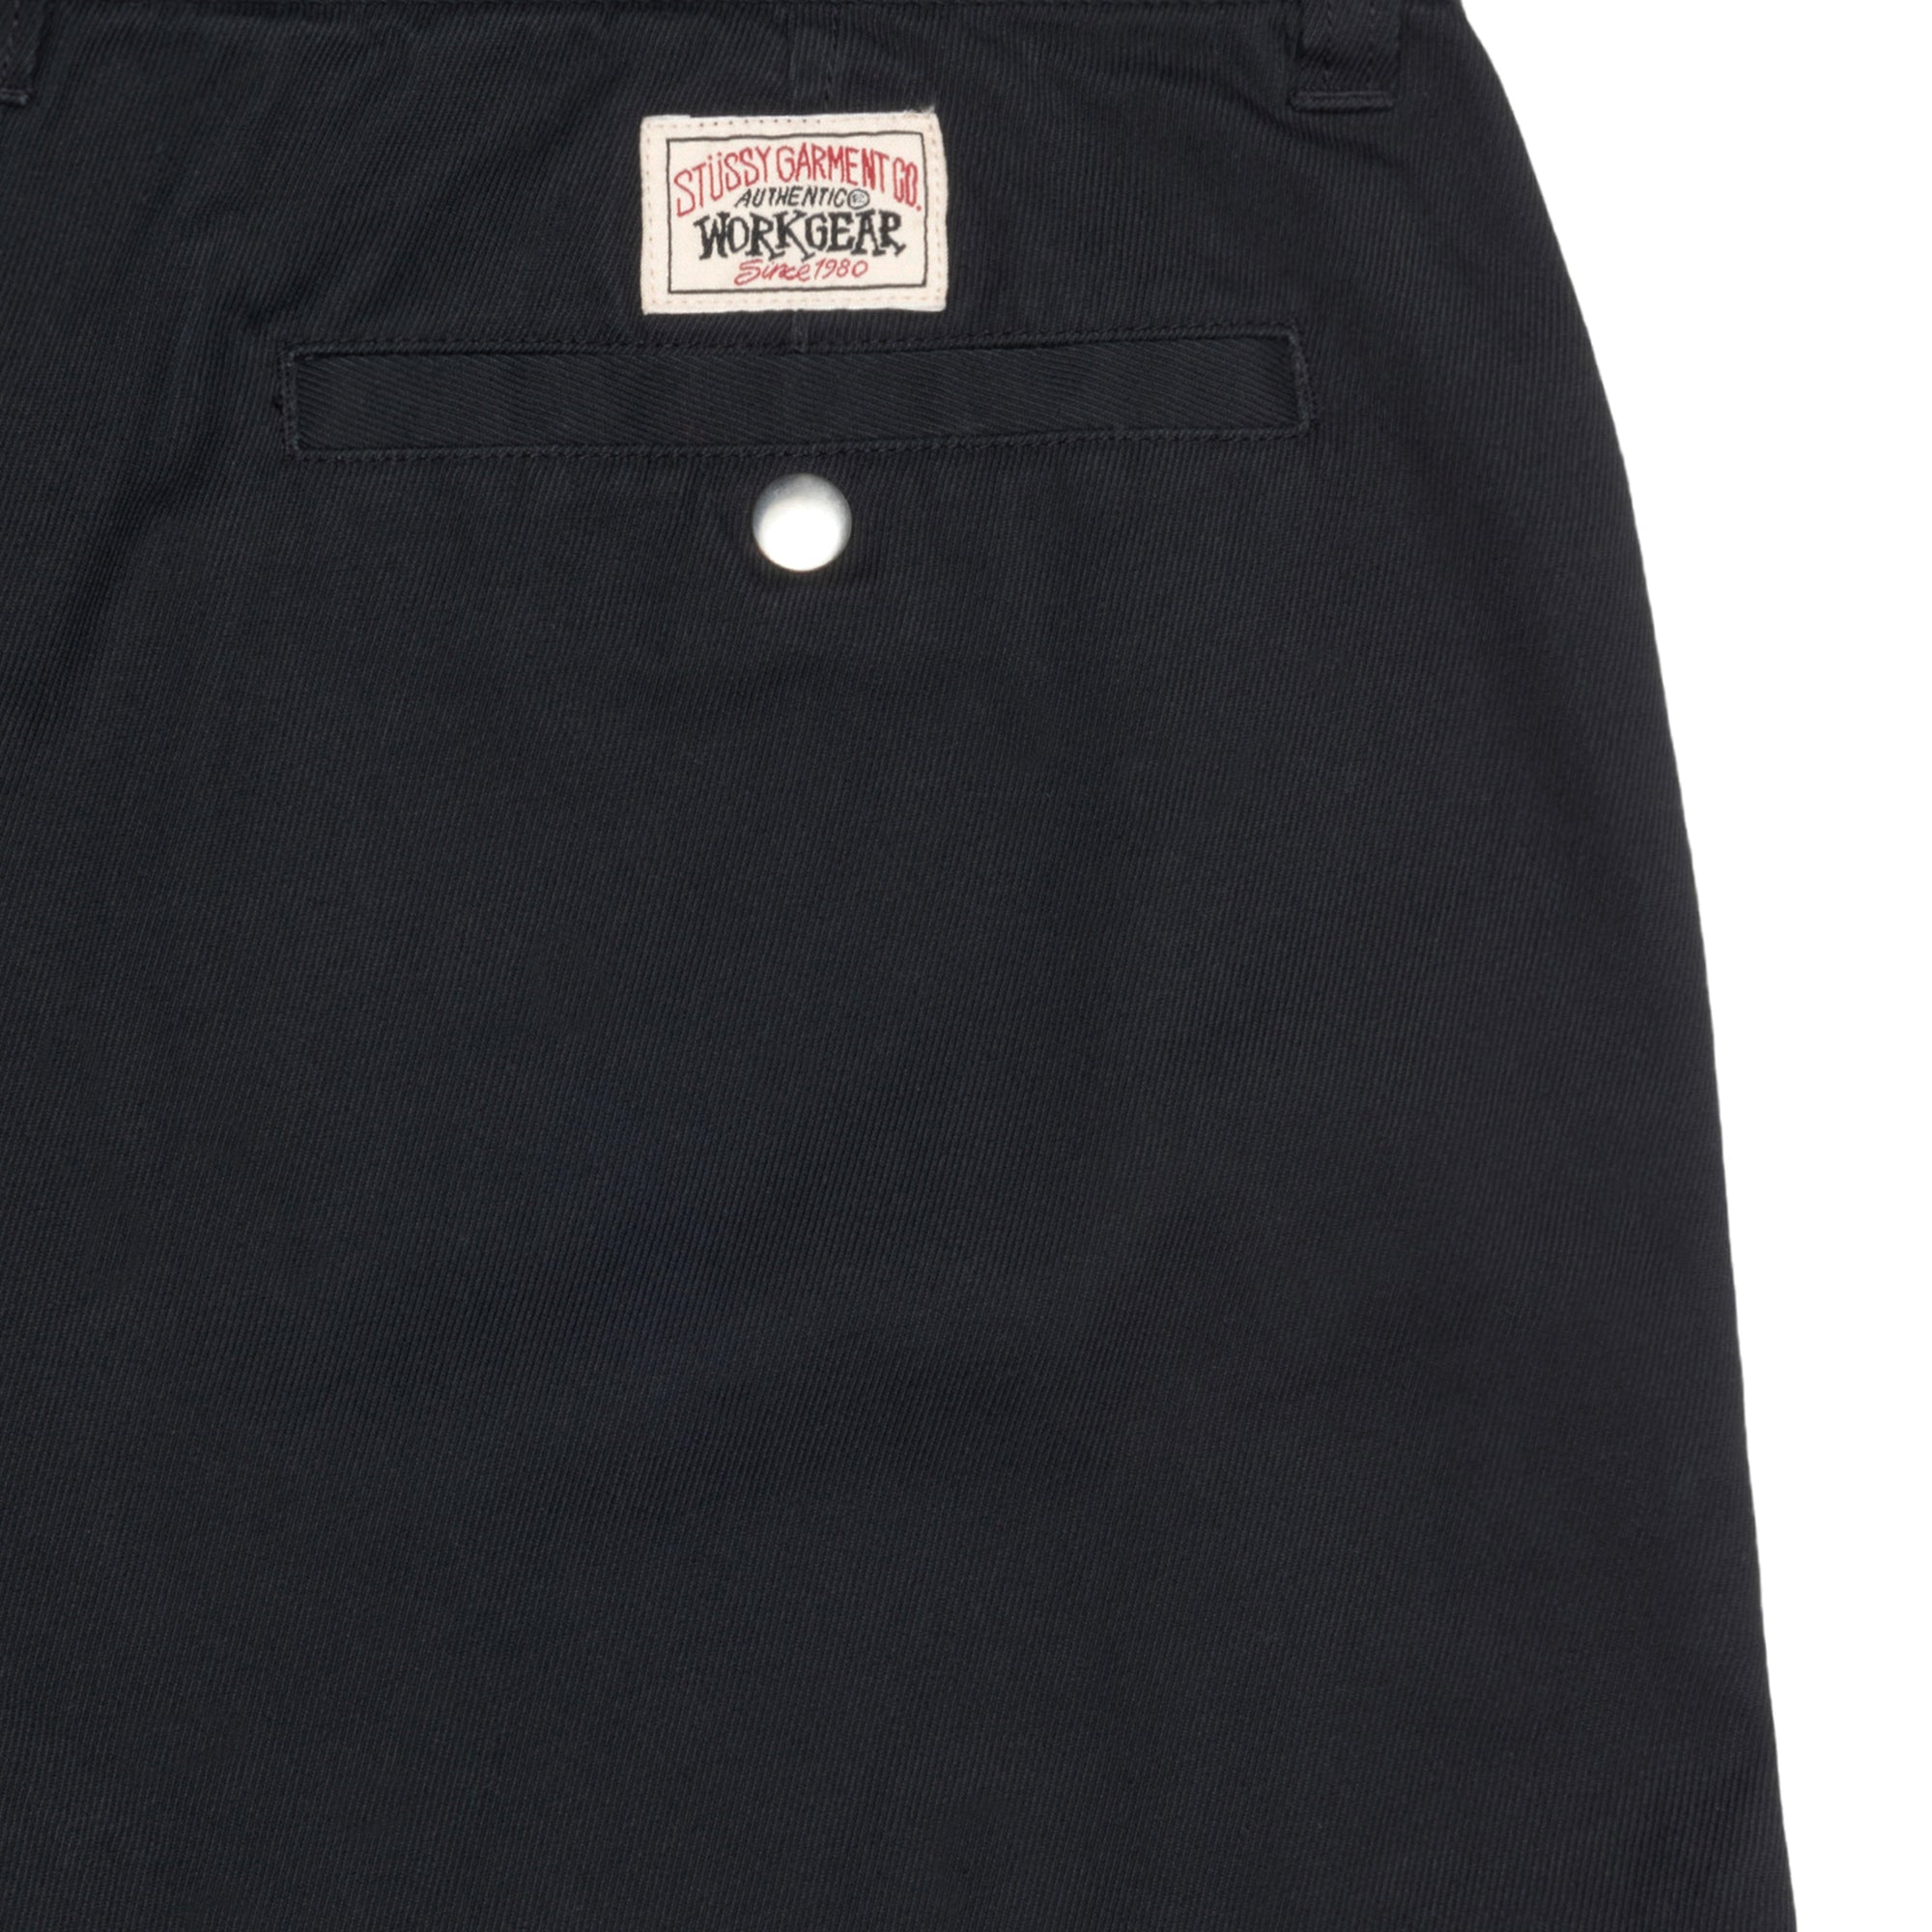 STÜSSY - Workgear Trouser Twill - (Black) view 4